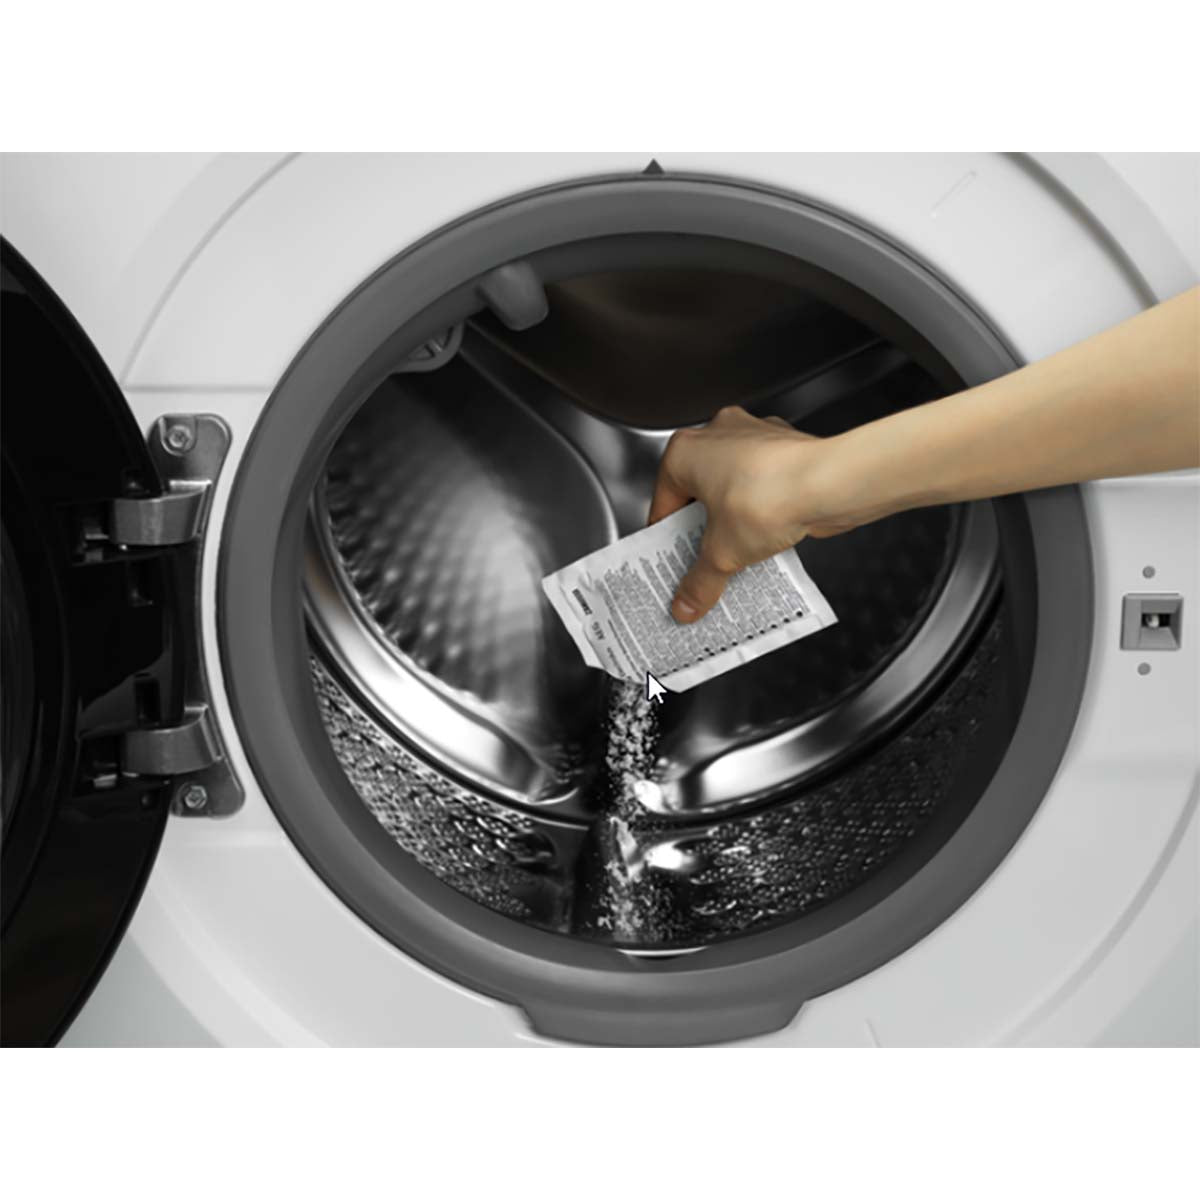 M3GCP201 Super Clean Entfetter für Waschmaschinen - 2 Sachets